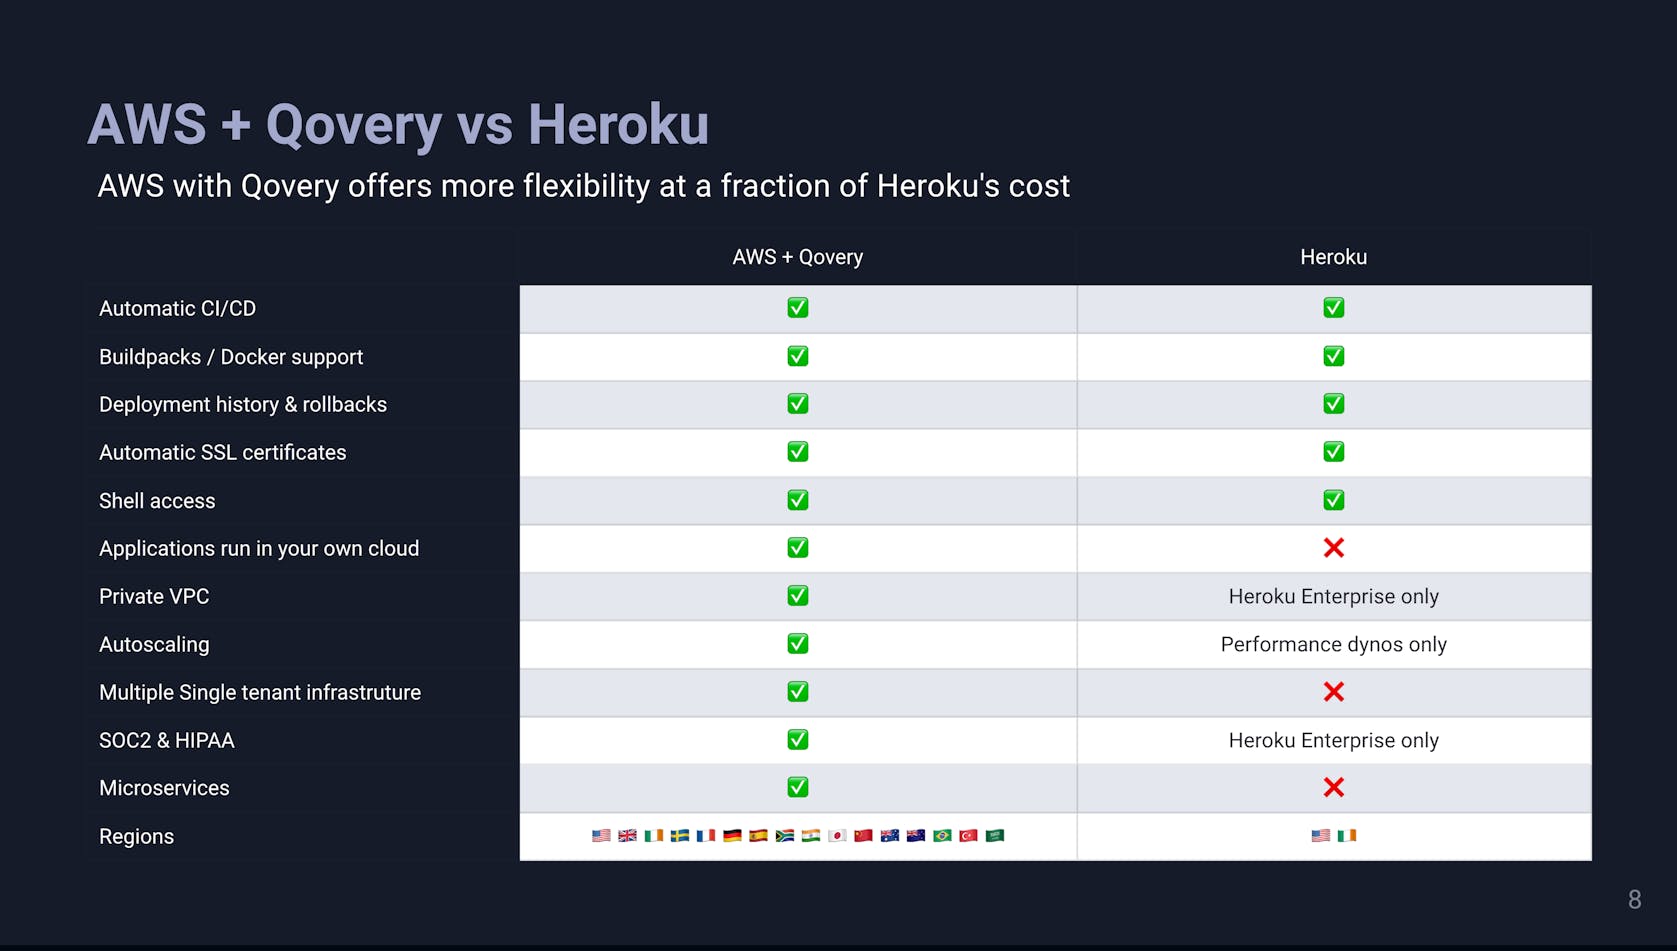 AWS + Qovery vs Heroku - Non-exhaustive comparison table